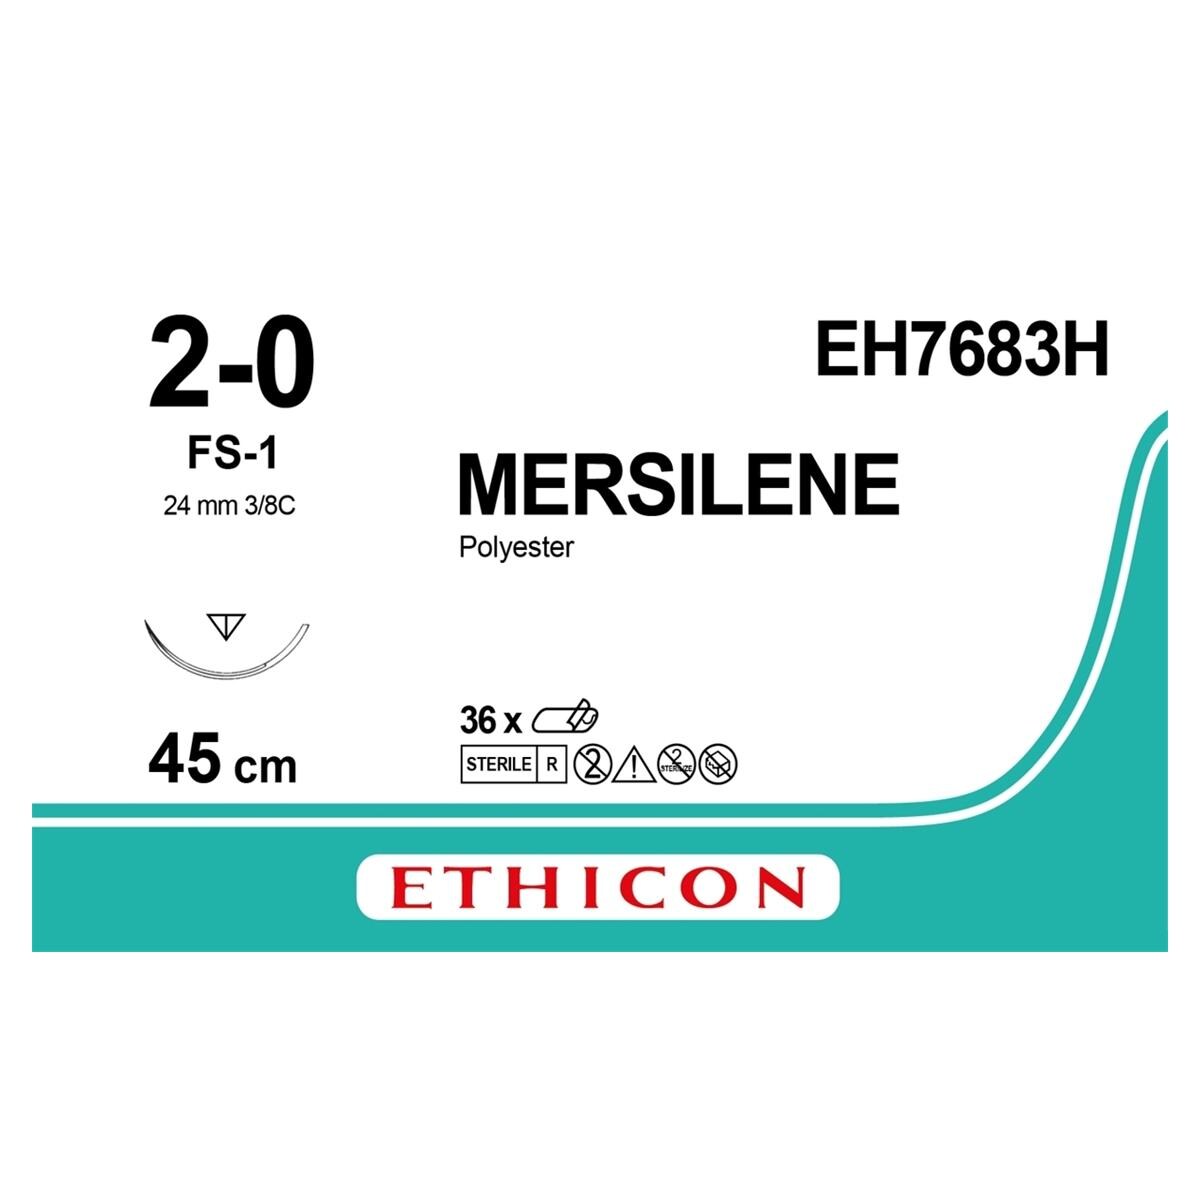 Mersilene - USP 2-0 FS1 45 cm groen EH7683H, per 36 stuks